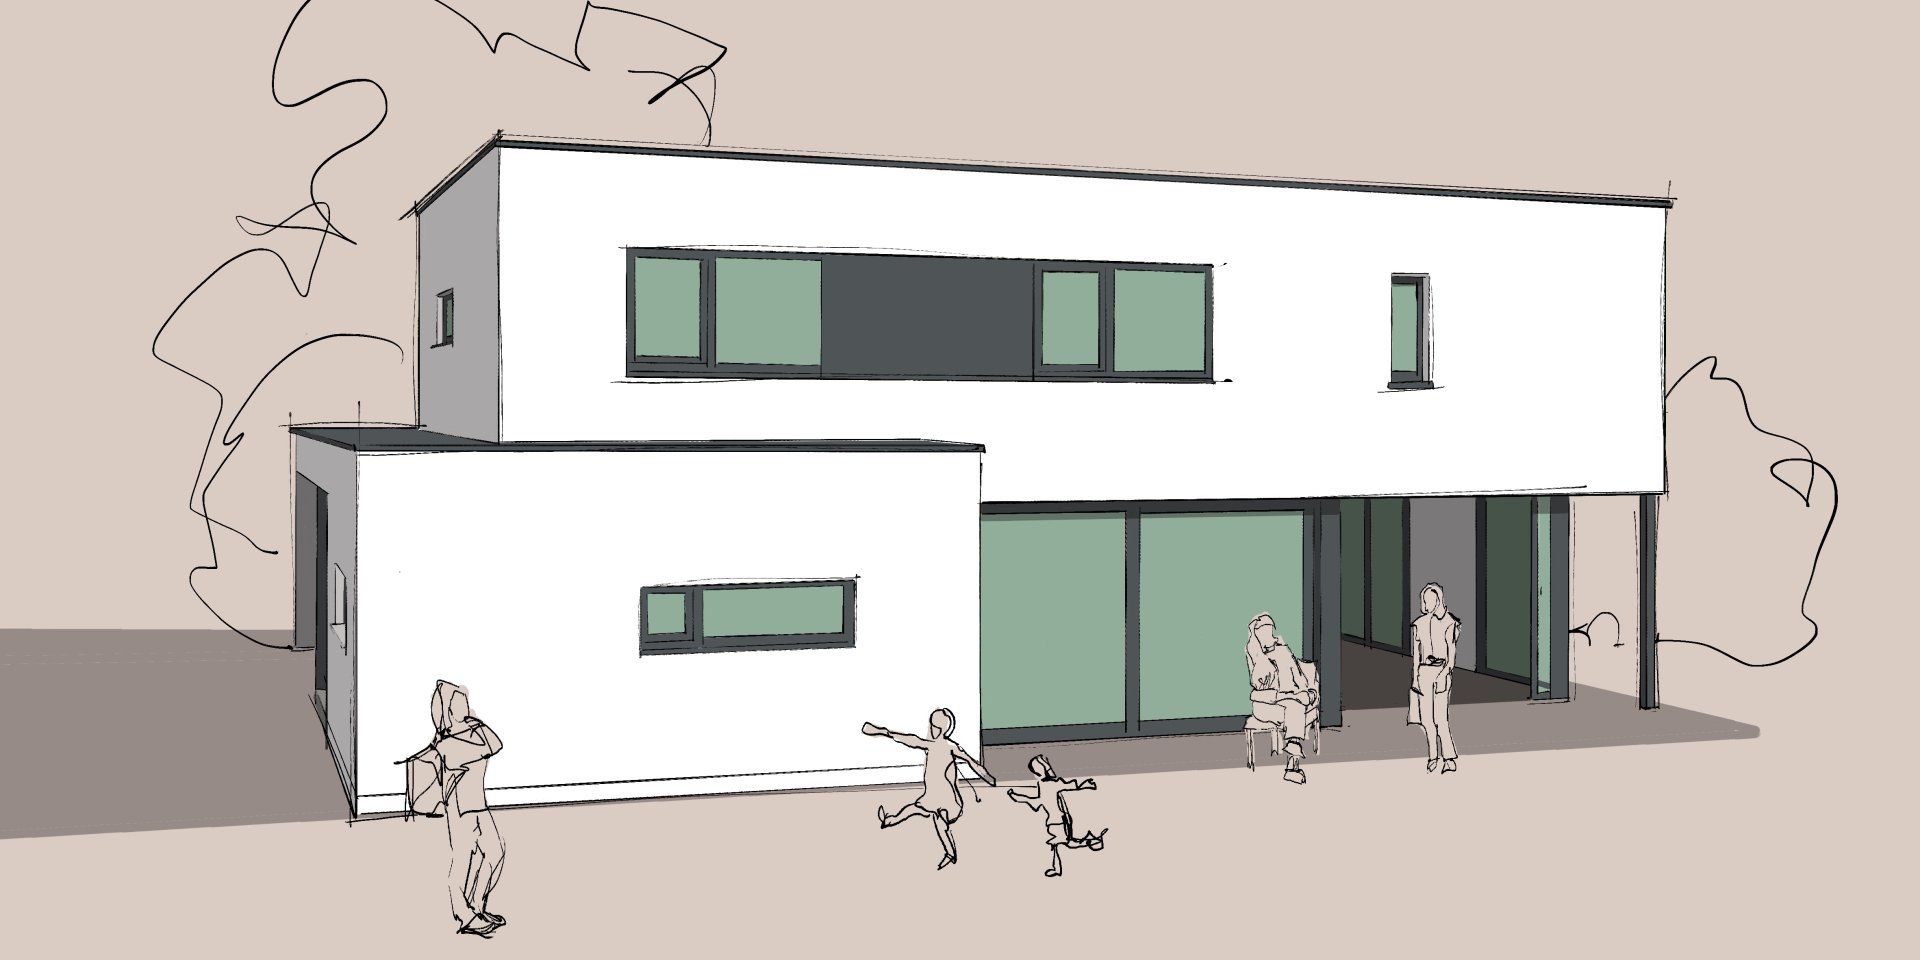 Grübbel Architektur. Atelier. - Beispiel eines modernen Einfamilienhauses mit Flachdach - Ansicht 2